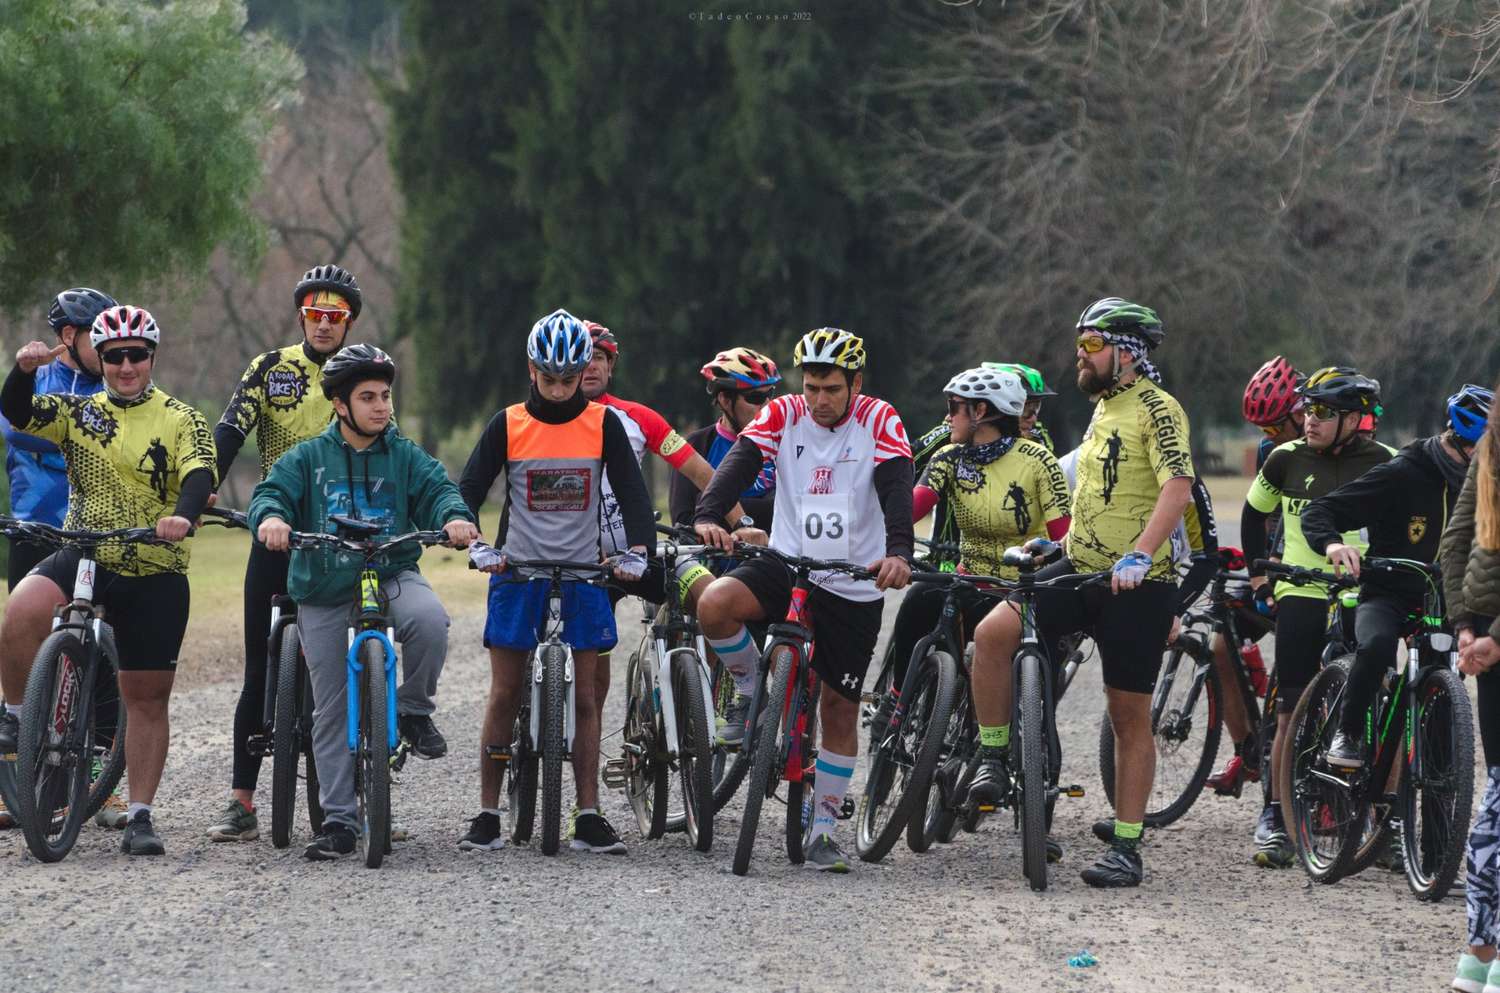 Con gran cantidad de participantes se llevó a cabo en la jornada del 9 de Julio un festival de Mountain Bike en el circuito de la Costanera organizado por la Subcomisión de Ciclismo de Barrio Norte.